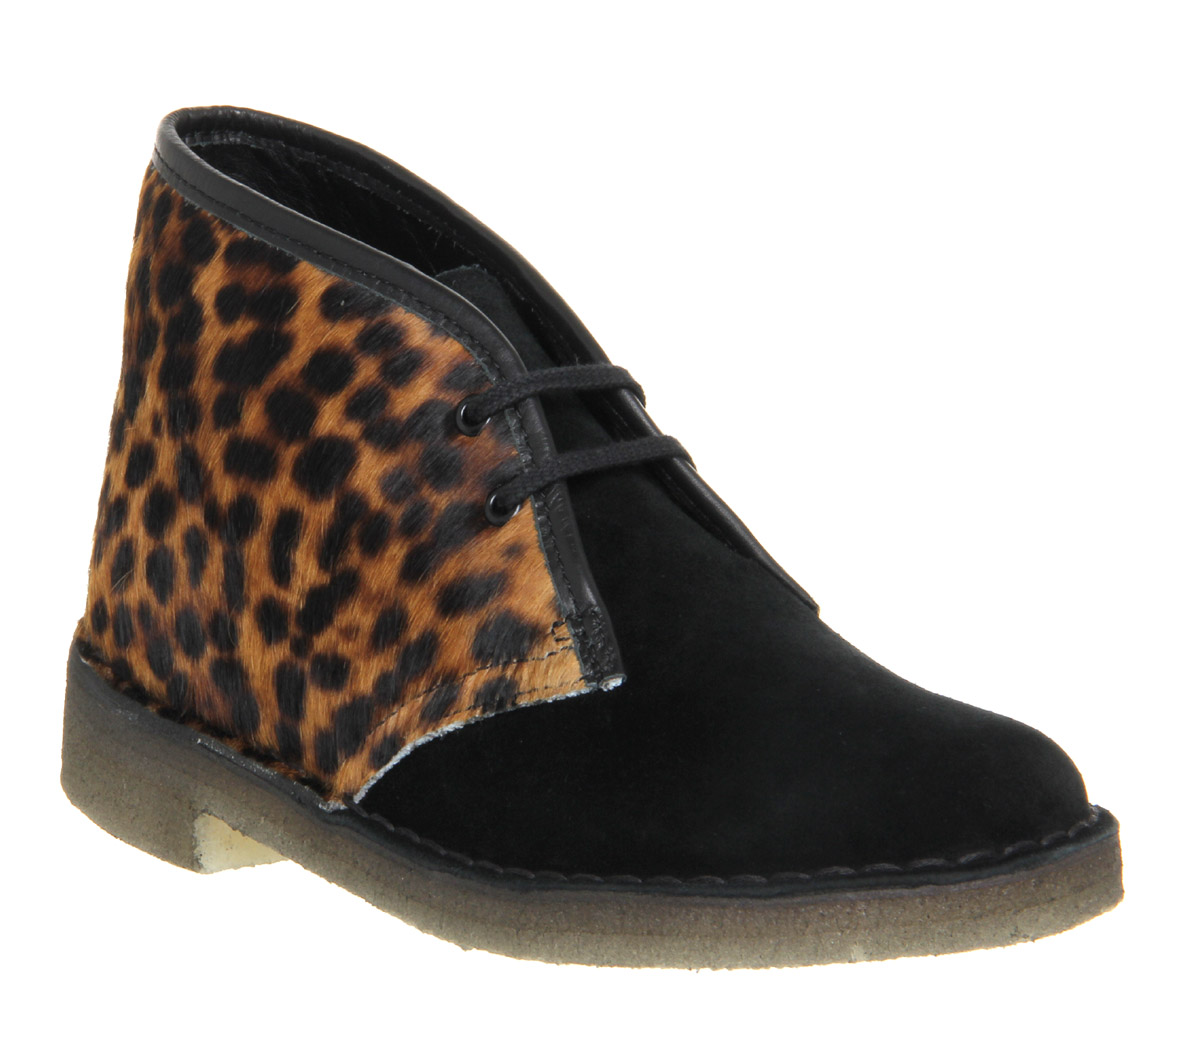 Clarks Originals Desert boots Leopard Print Suede Mix - Ankle Boots